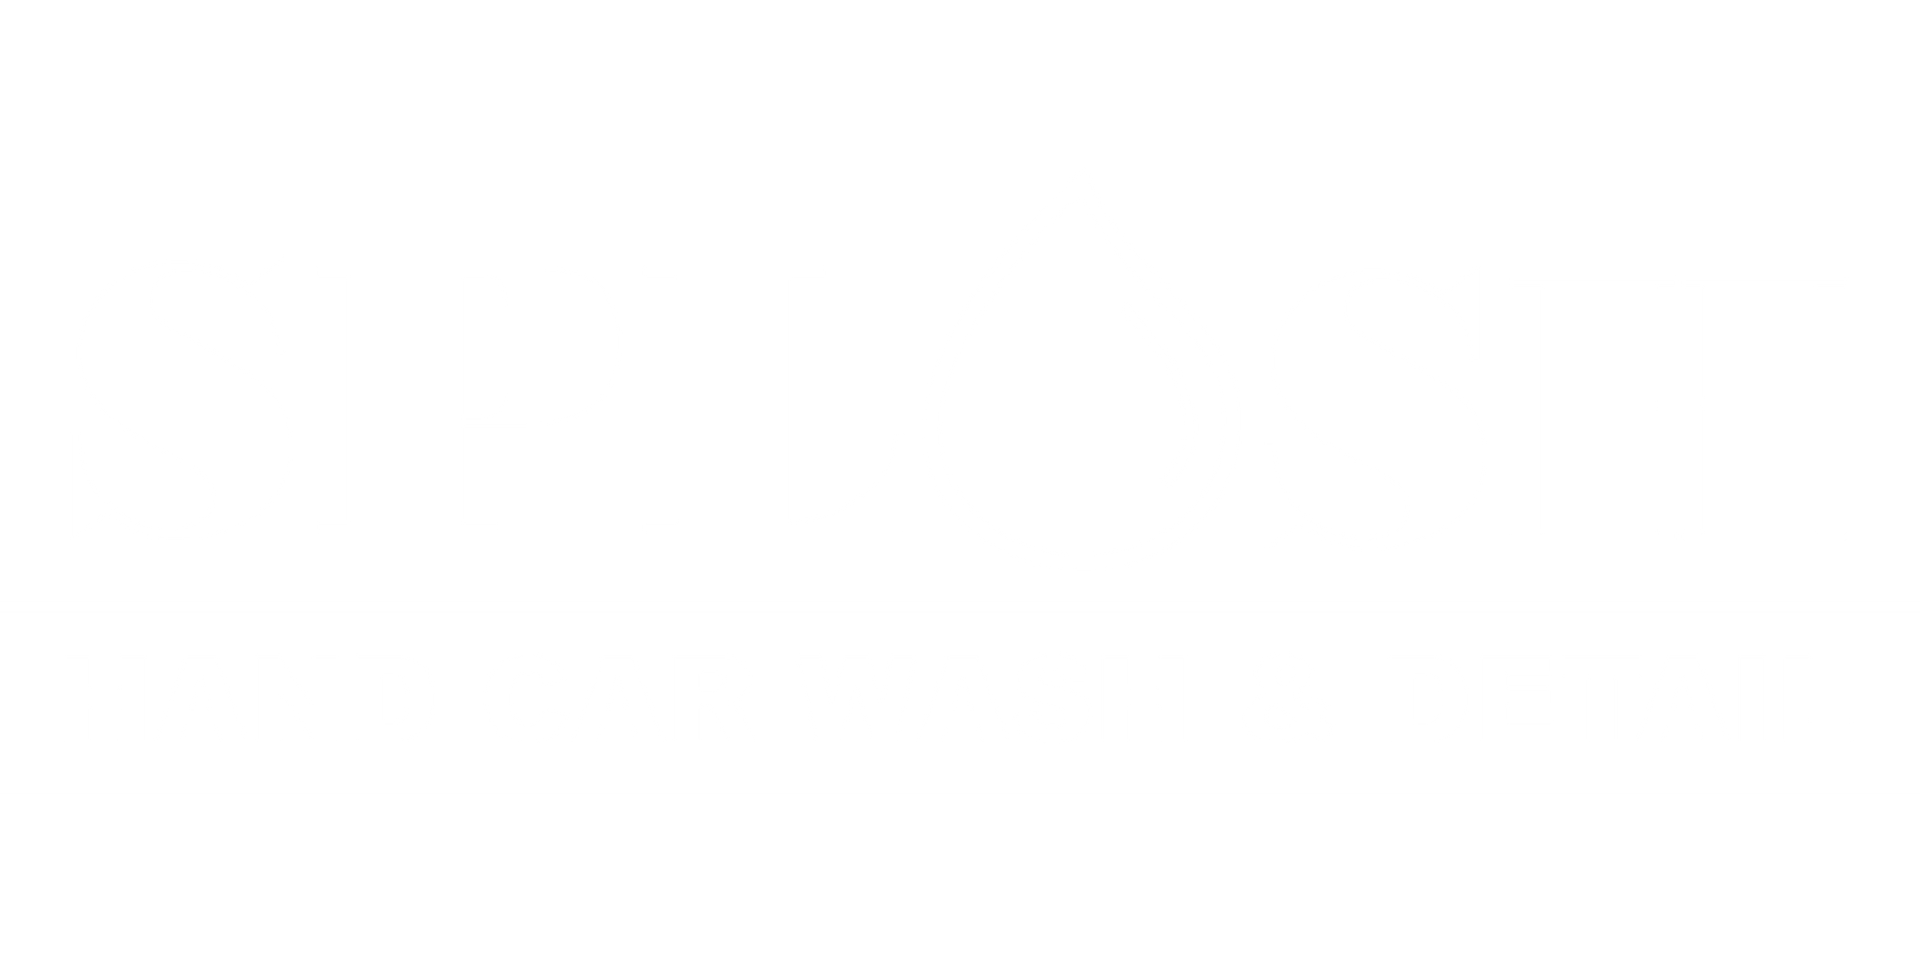 Splash Hand Car Wash & Detail